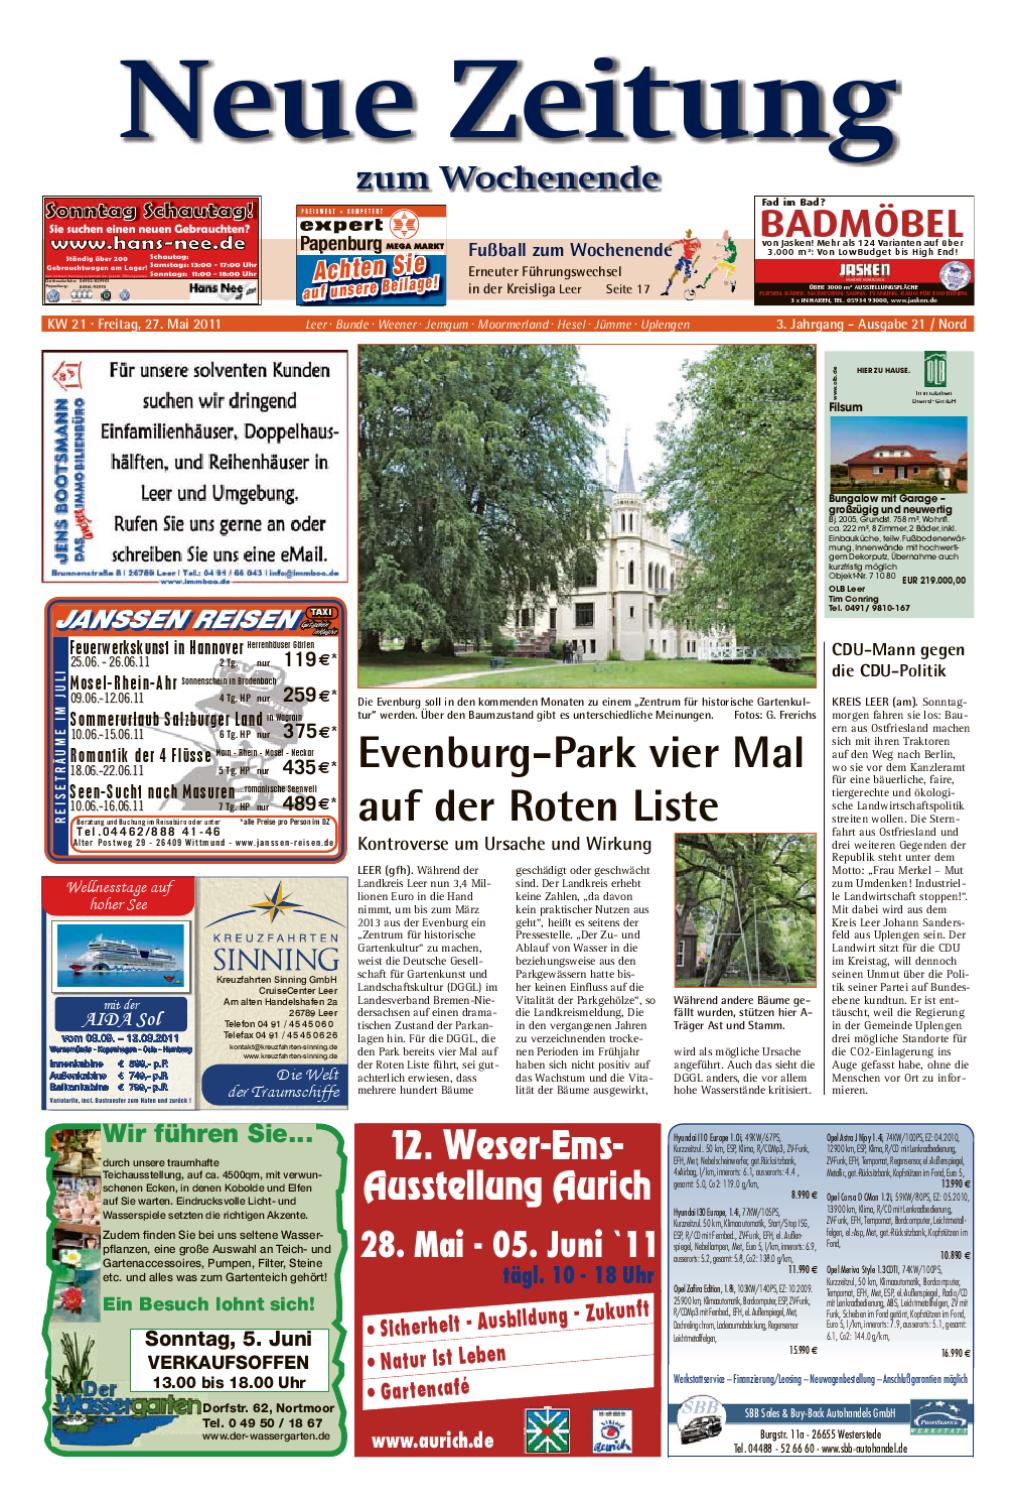 Gartenaccessoires Landhausstil Schön Neue Zeitung Ausgabe nord Kw 21 by Gerhard Verlag Gmbh issuu